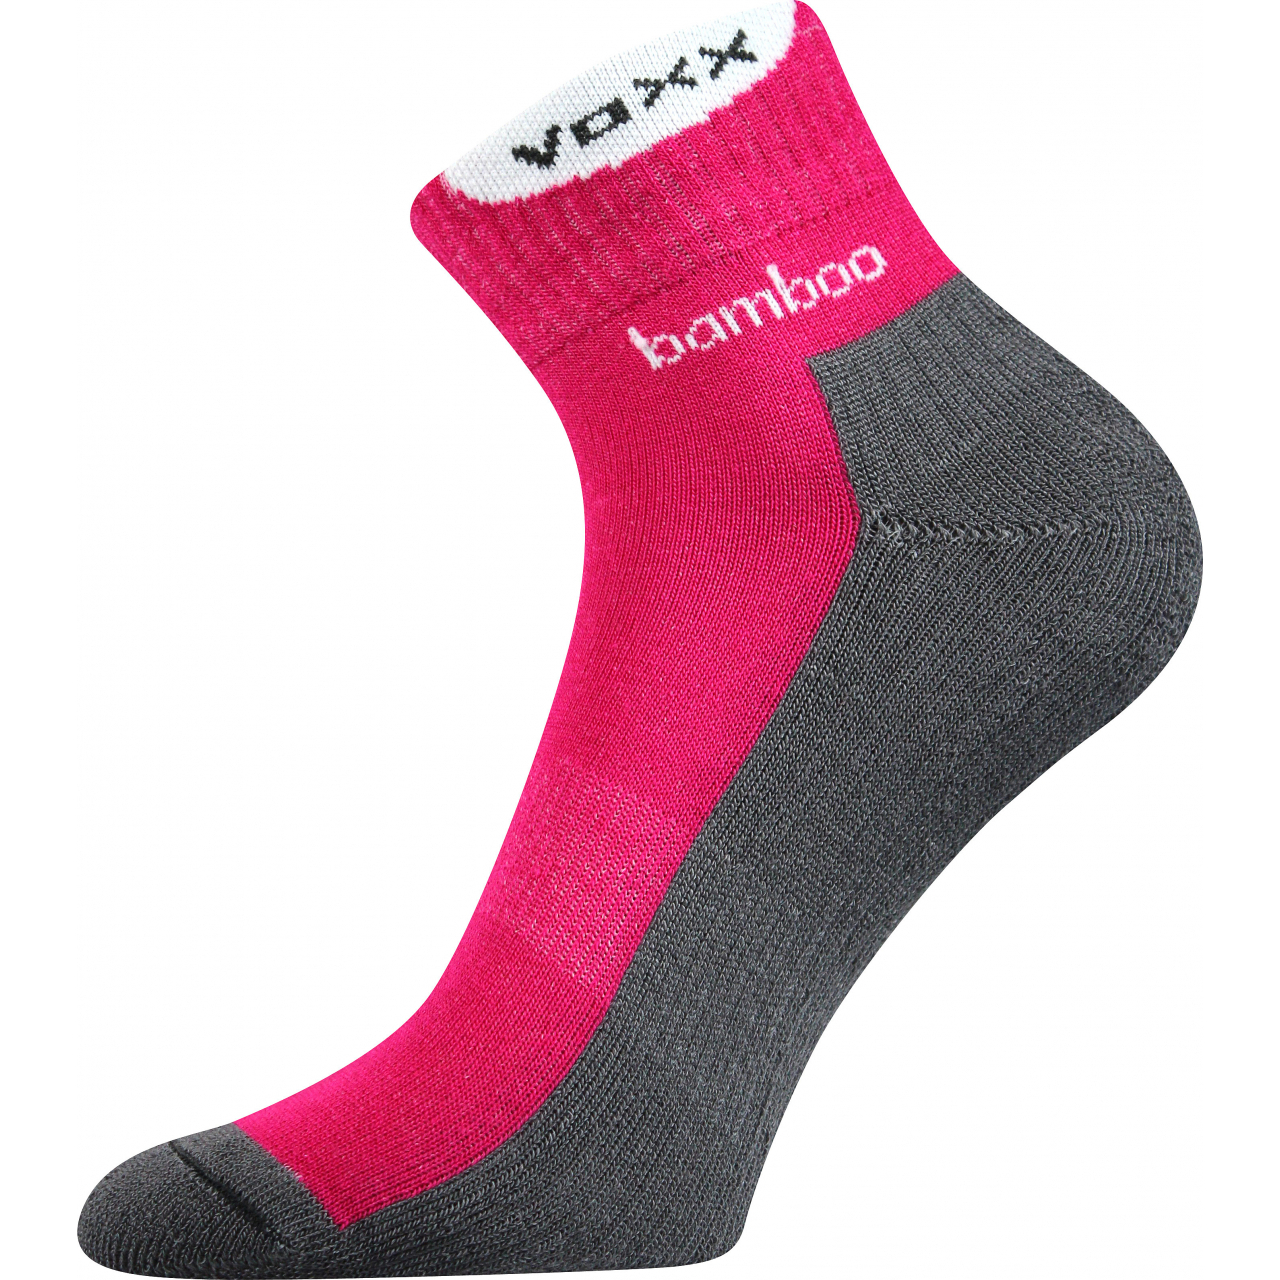 Ponožky bambusové sportovní Voxx Brooke - tmavě růžové-šedé, 35-38